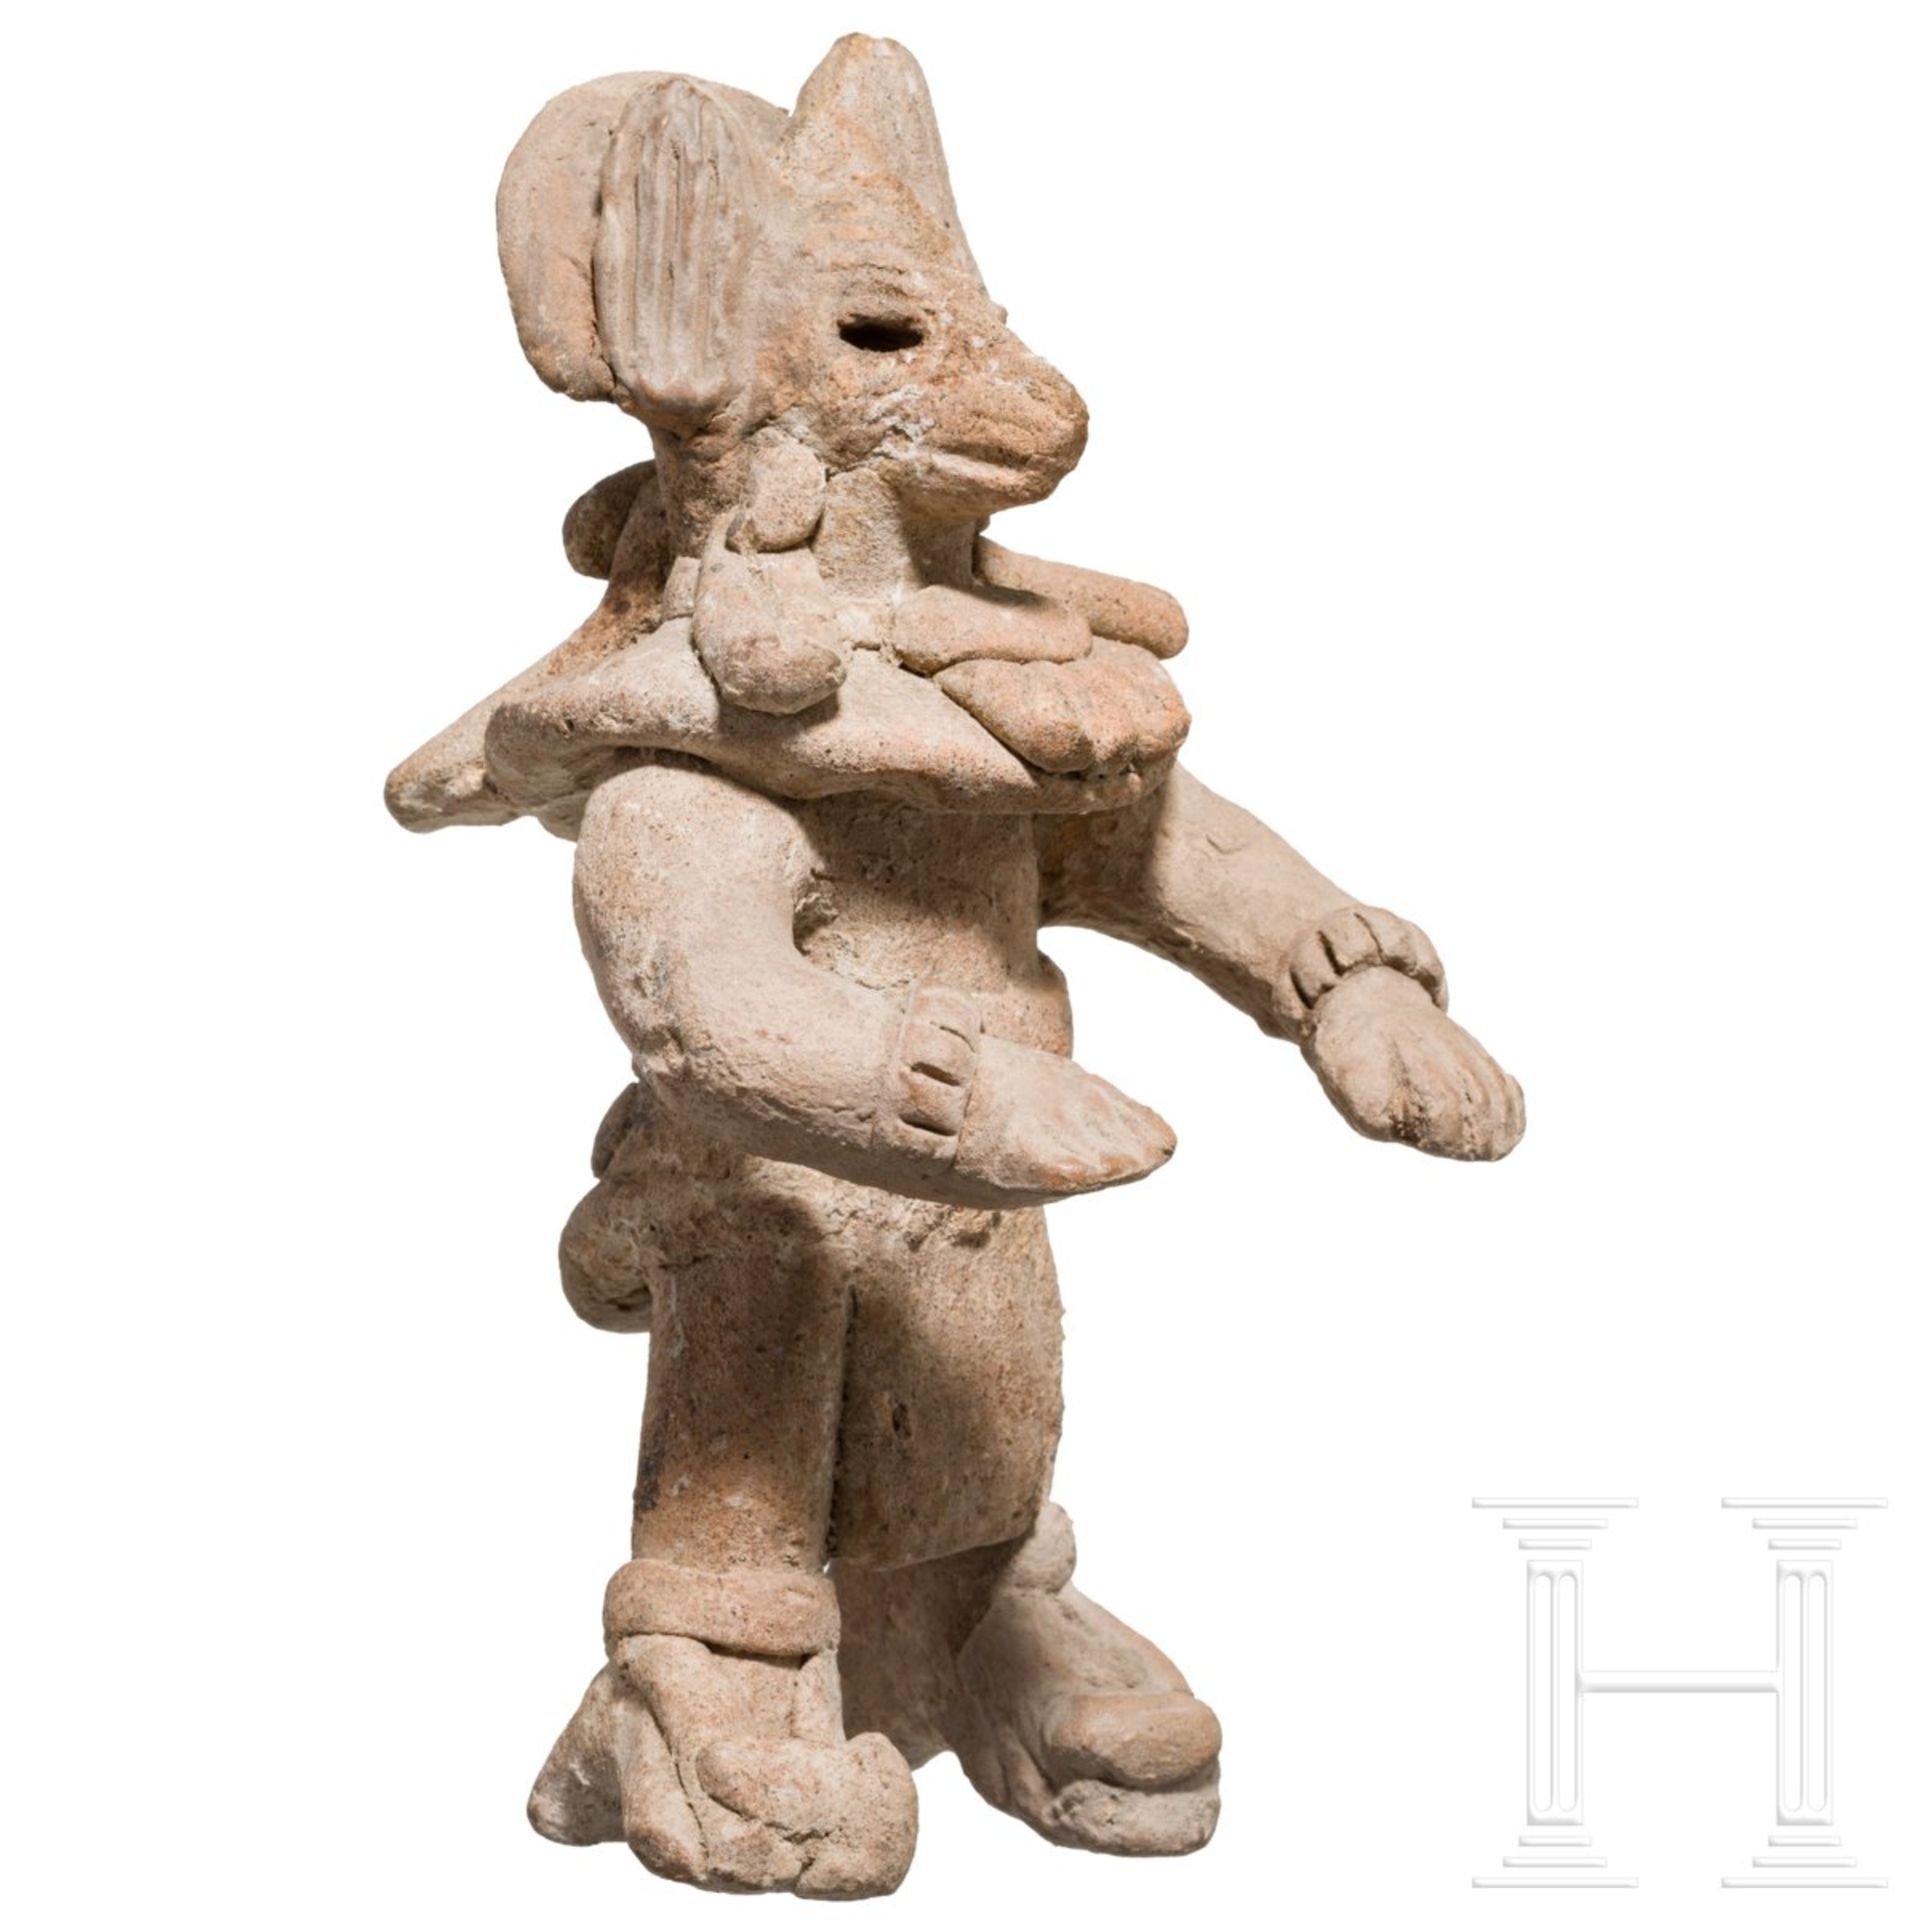 Seltene Terrakottafigur mit Koyotenmaske, Mexiko, Veracruz, ca. 900 - 1200 n. Chr. - Image 2 of 5